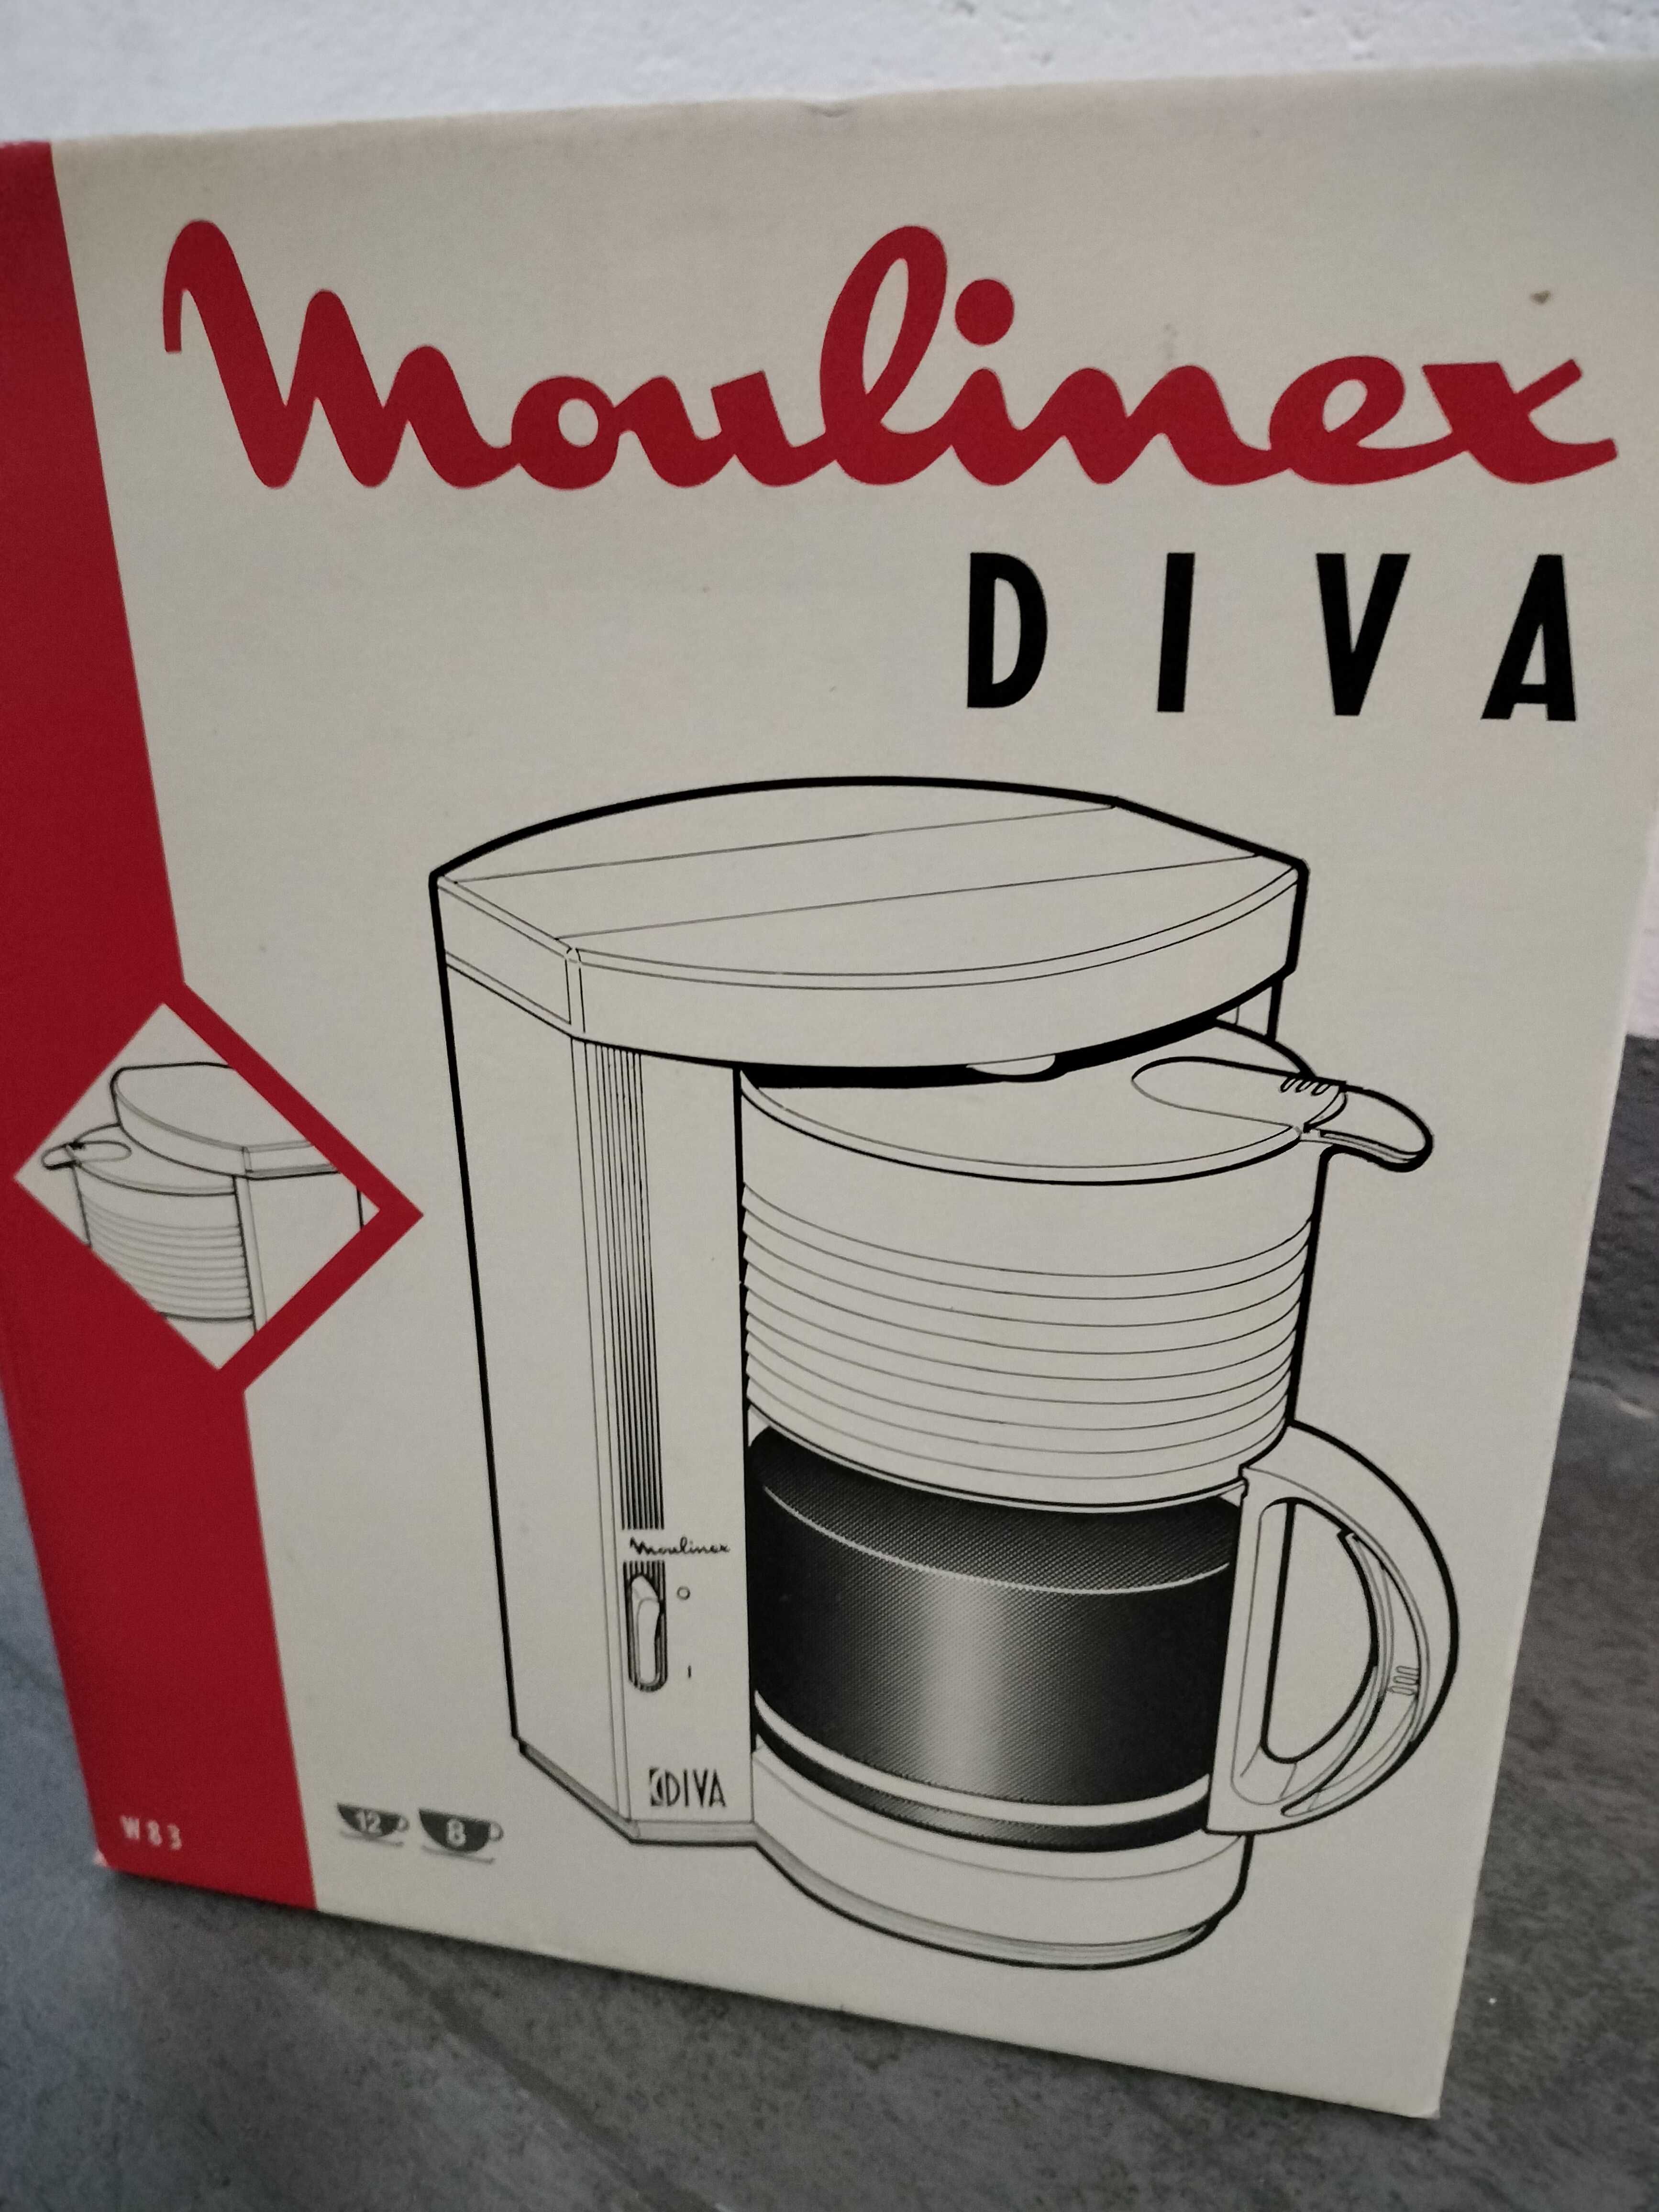 Cafeteira Moulinex DIVA - Artigo Vintage - Anos 1990